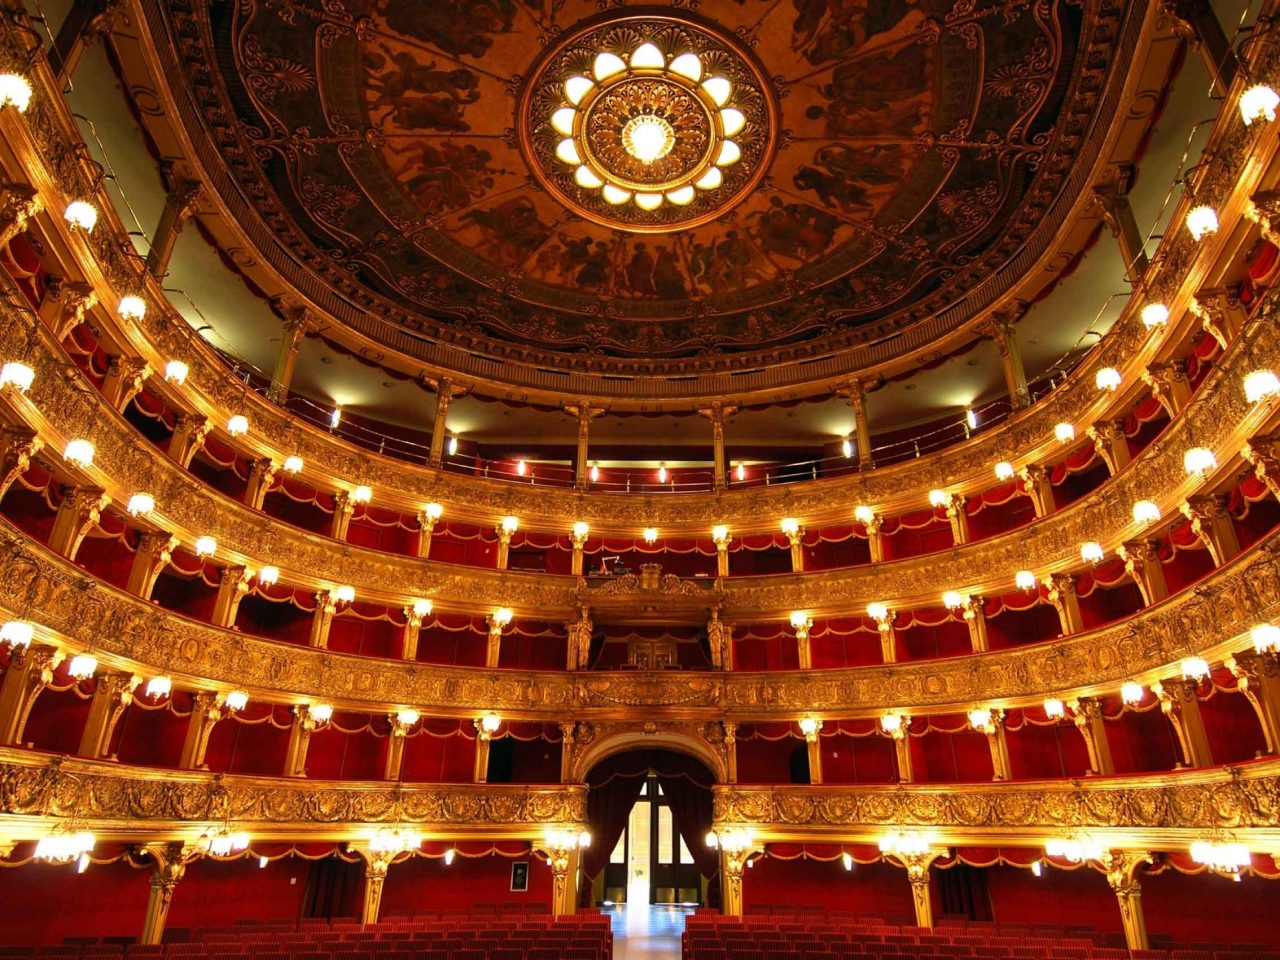 Teatro_Carignano-1280x960.jpg